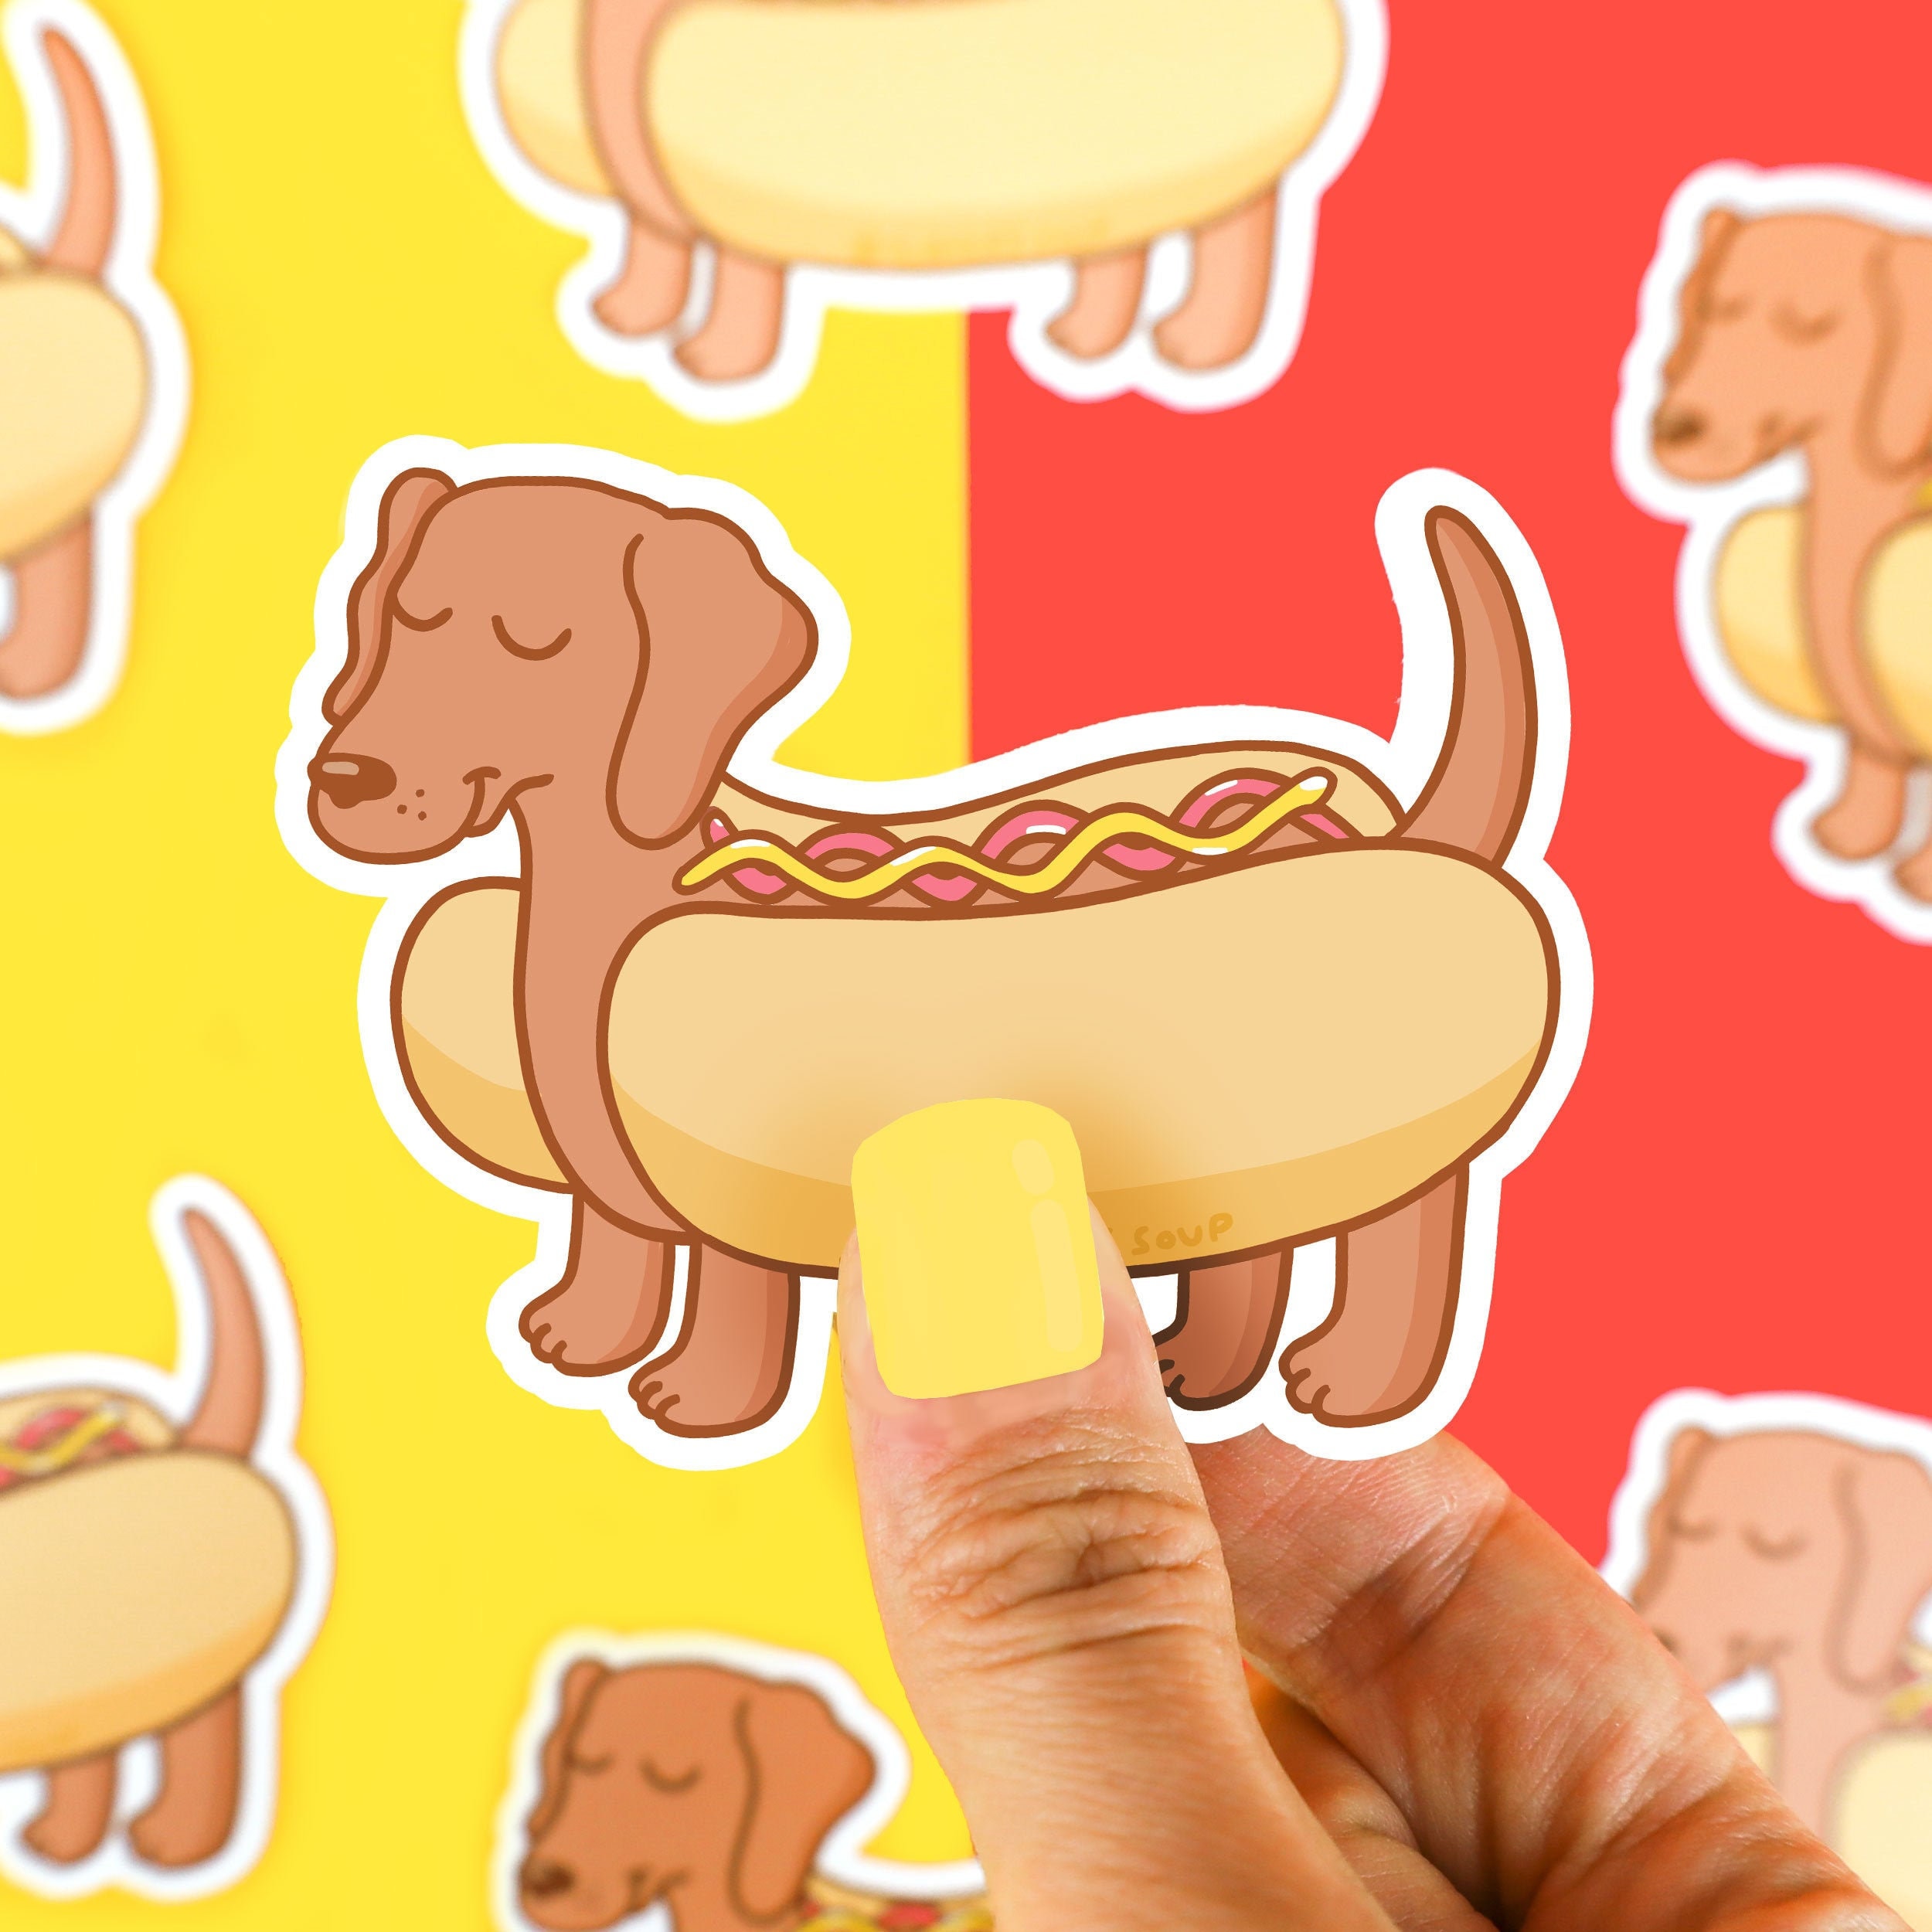 2 x Vinyl Stickers 10cm Sausage Dog Dachshund Puppy Cool Gift #16342 